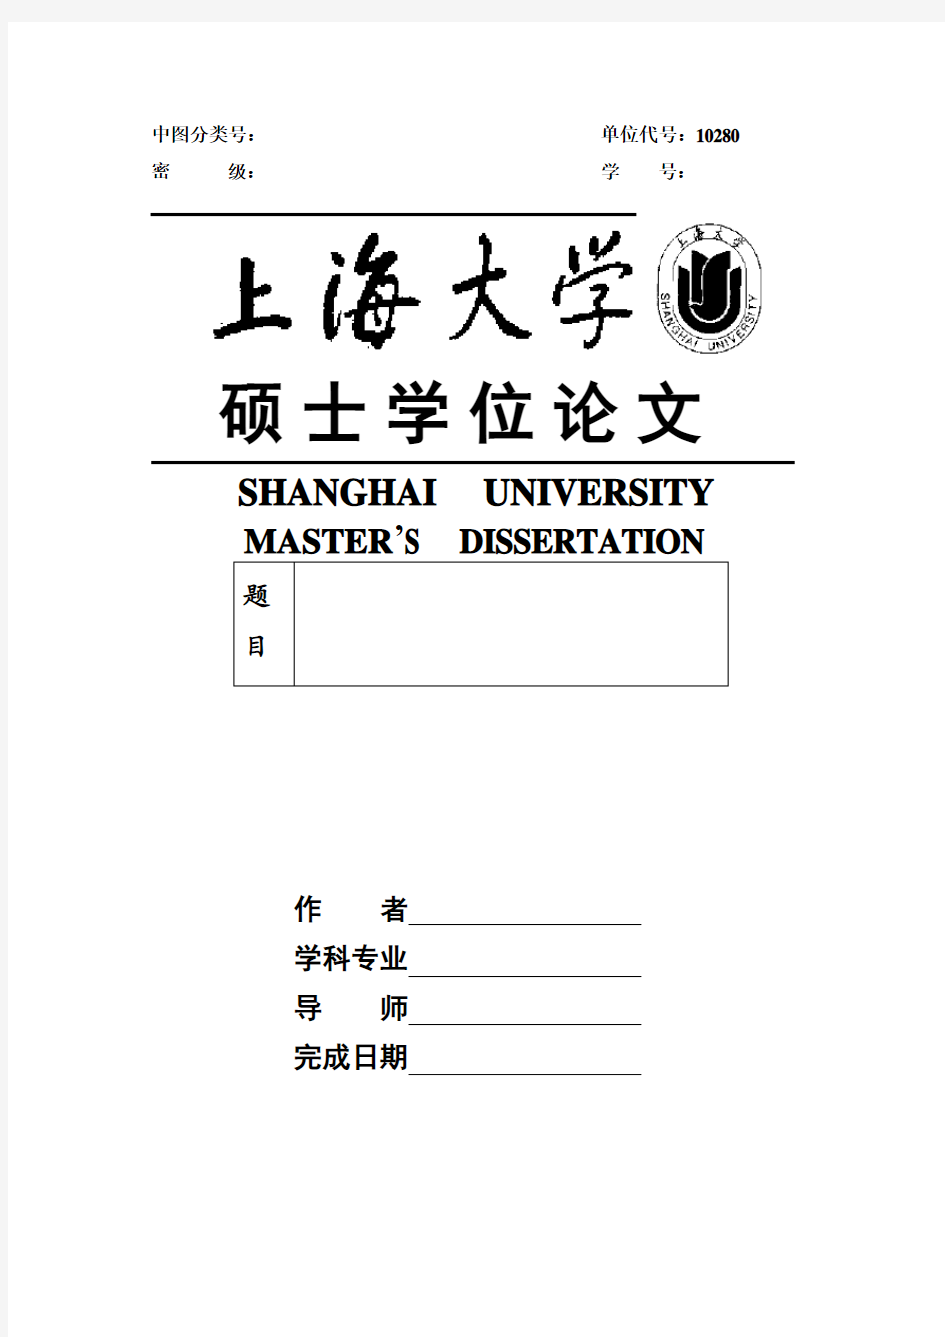 上海大学硕士学位论文模板